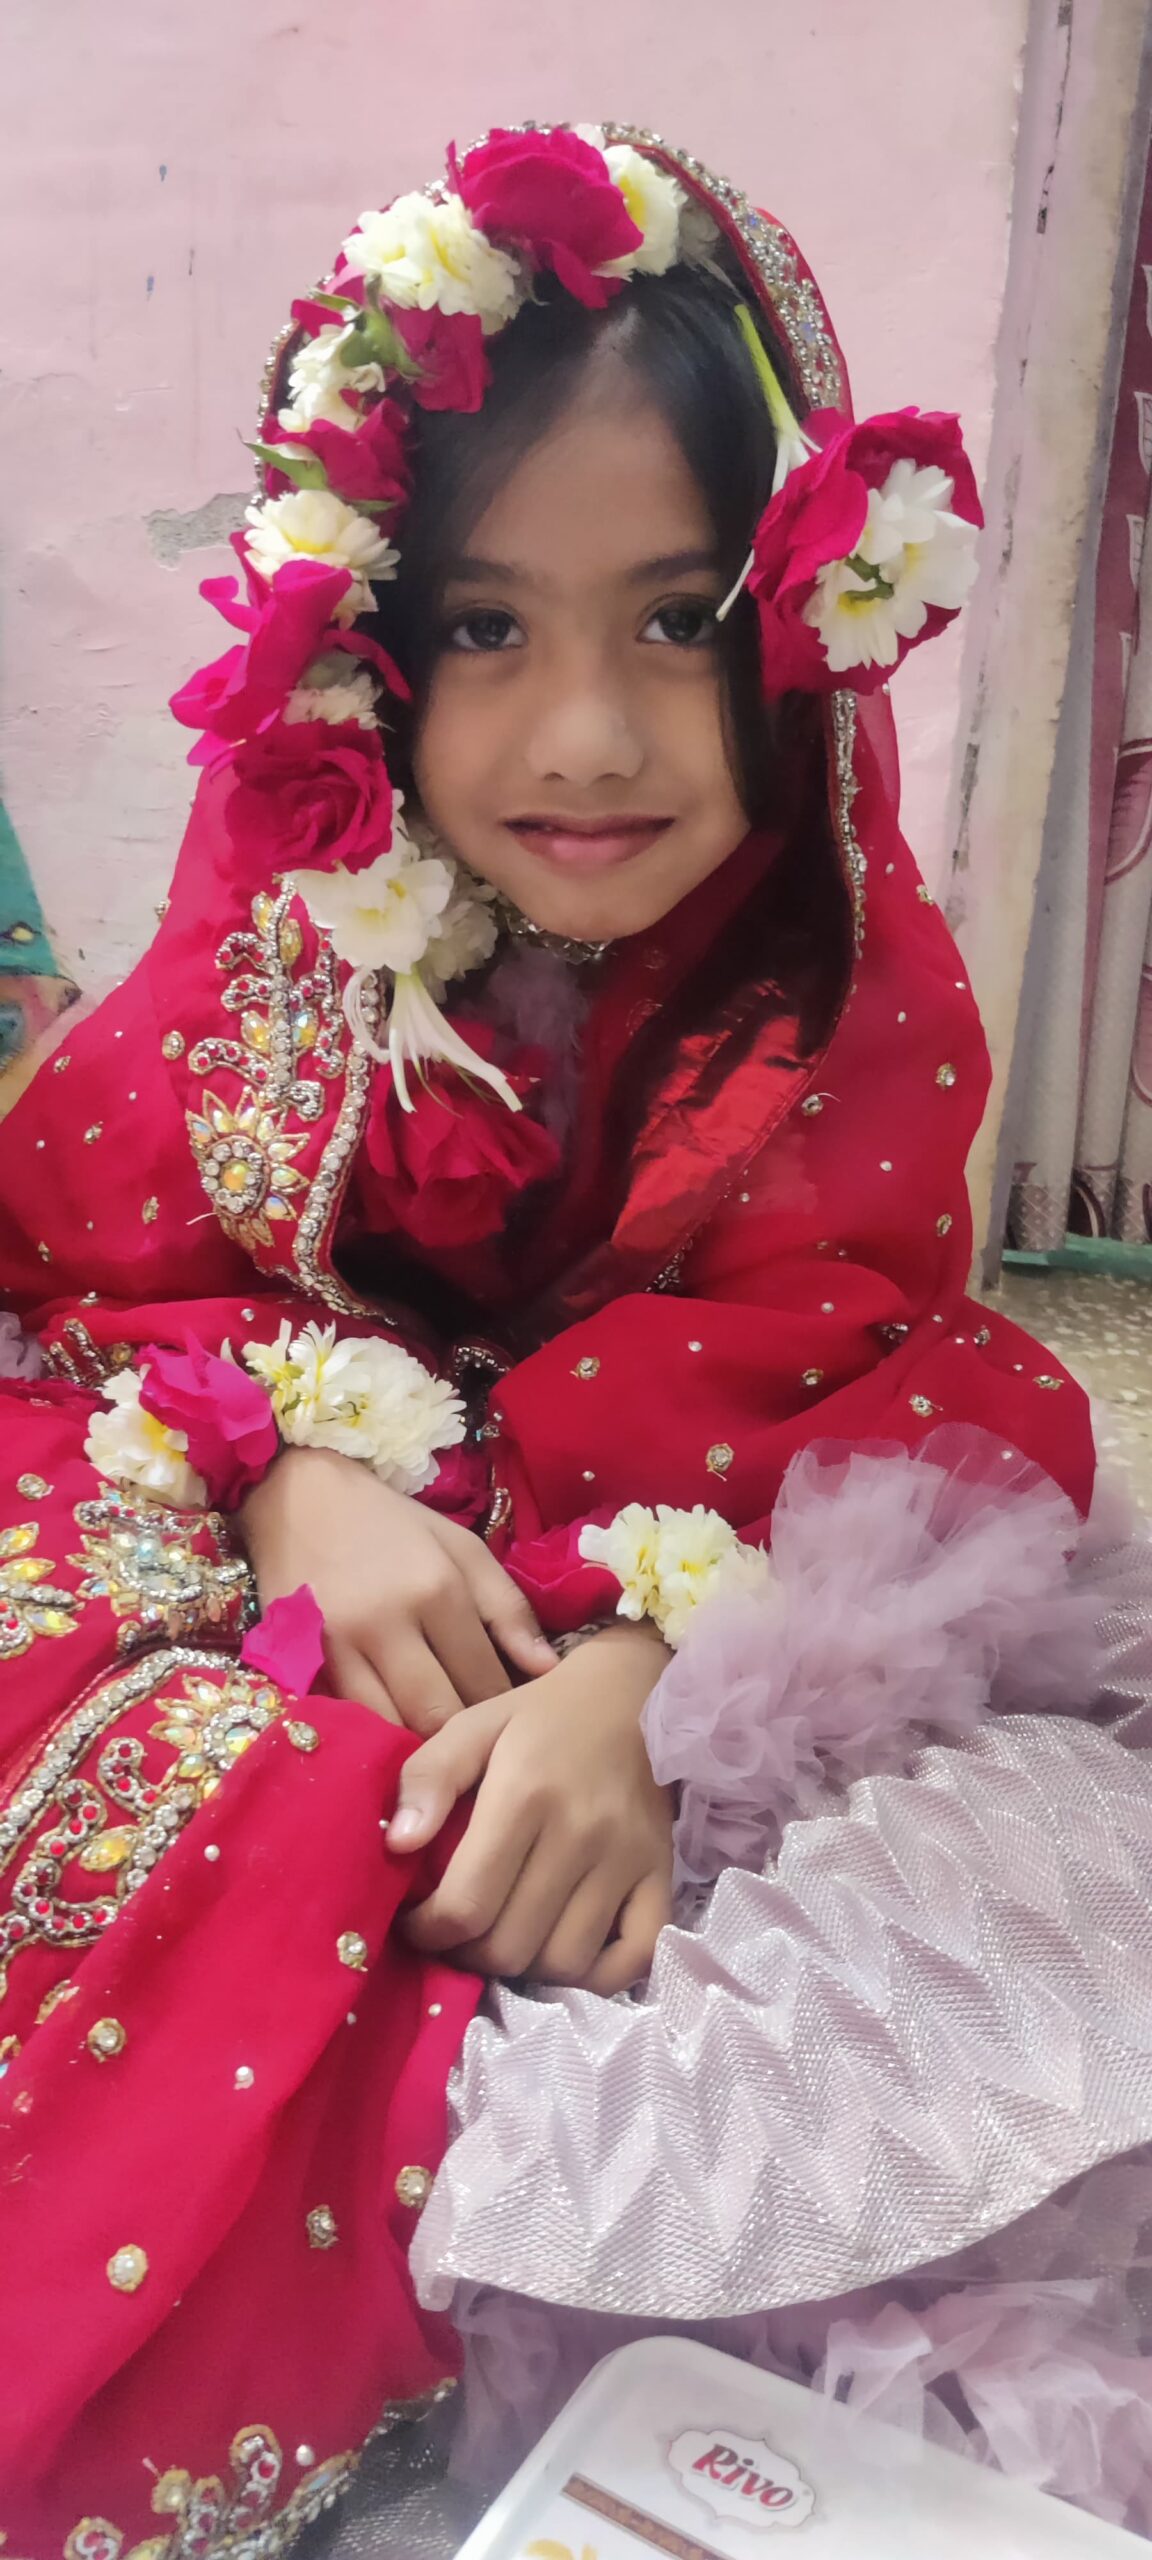 7 साल की नन्ही जुनैरा नूर ने अपना पहला रोजा रखा.